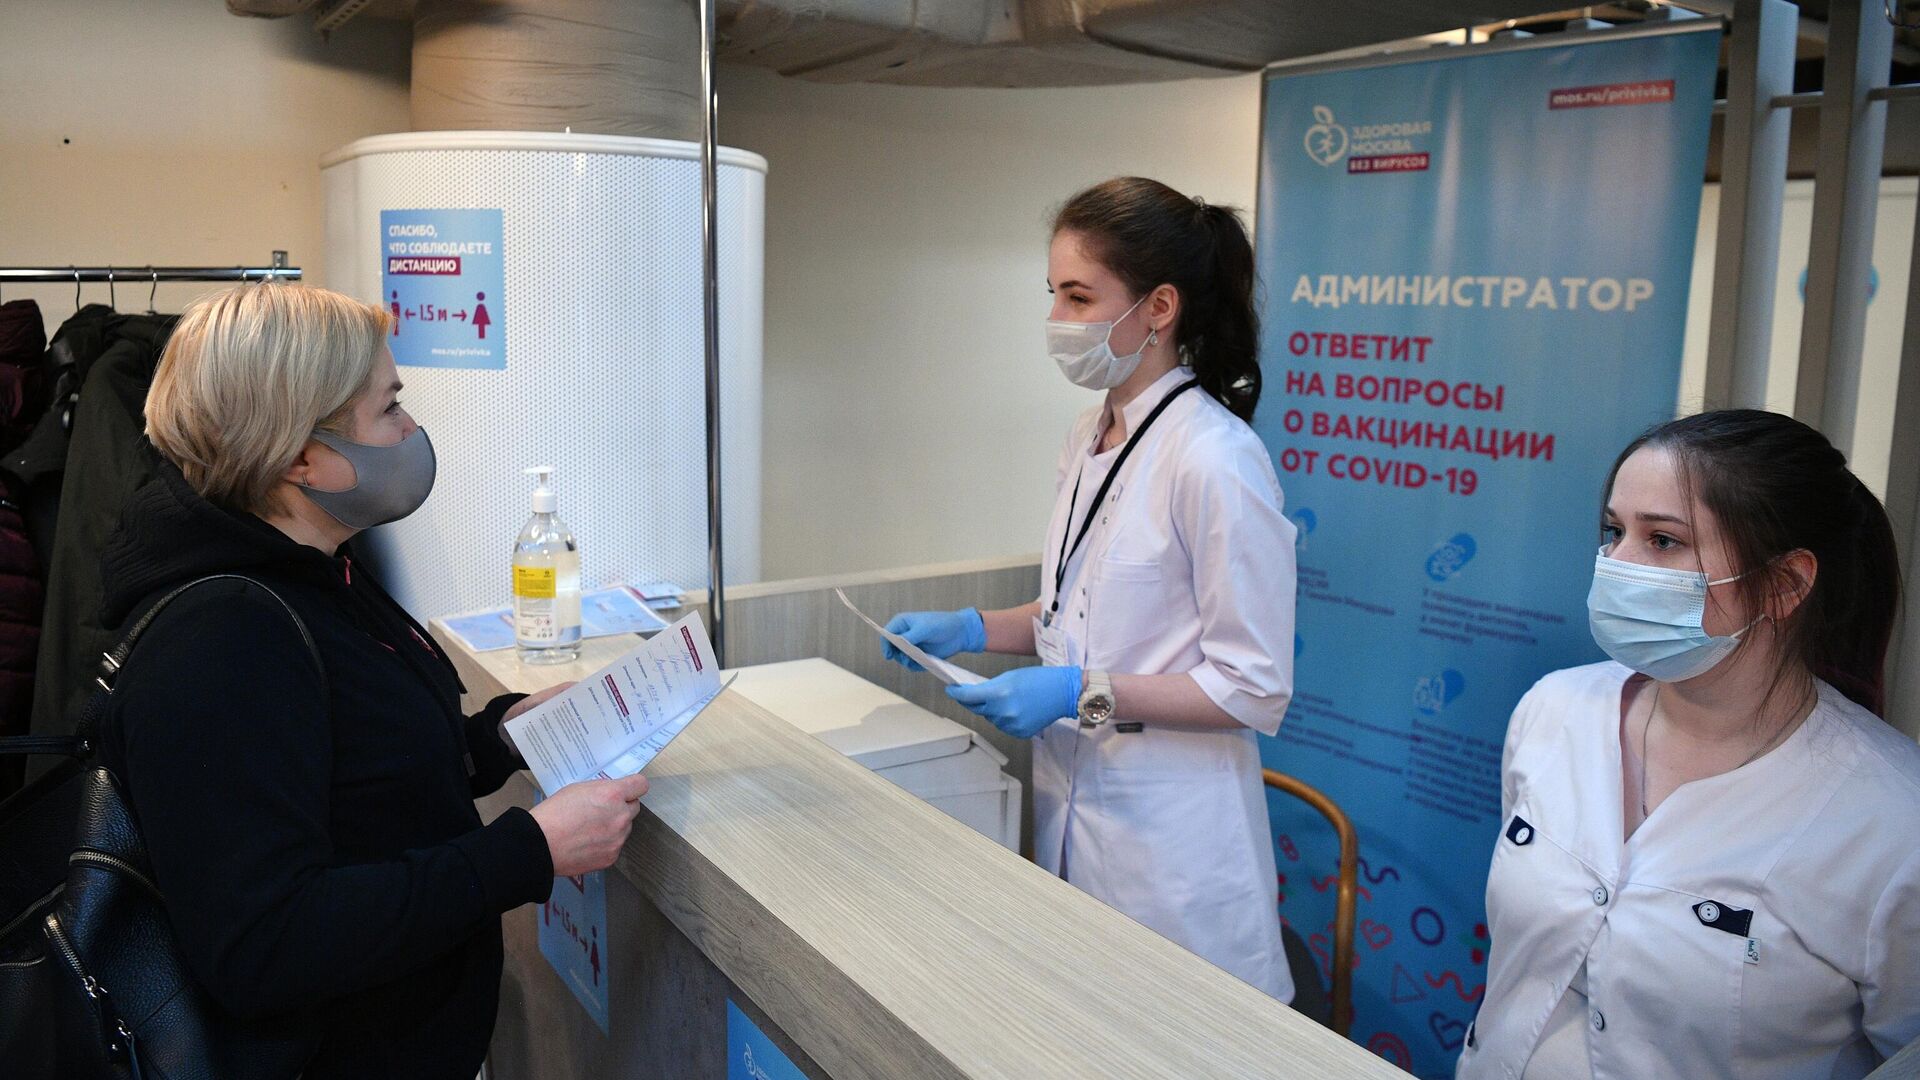 Женщина получает сертификат о вакцинации от СOVID-19 на территории фудмолла Депо.Москва - РИА Новости, 1920, 17.02.2021